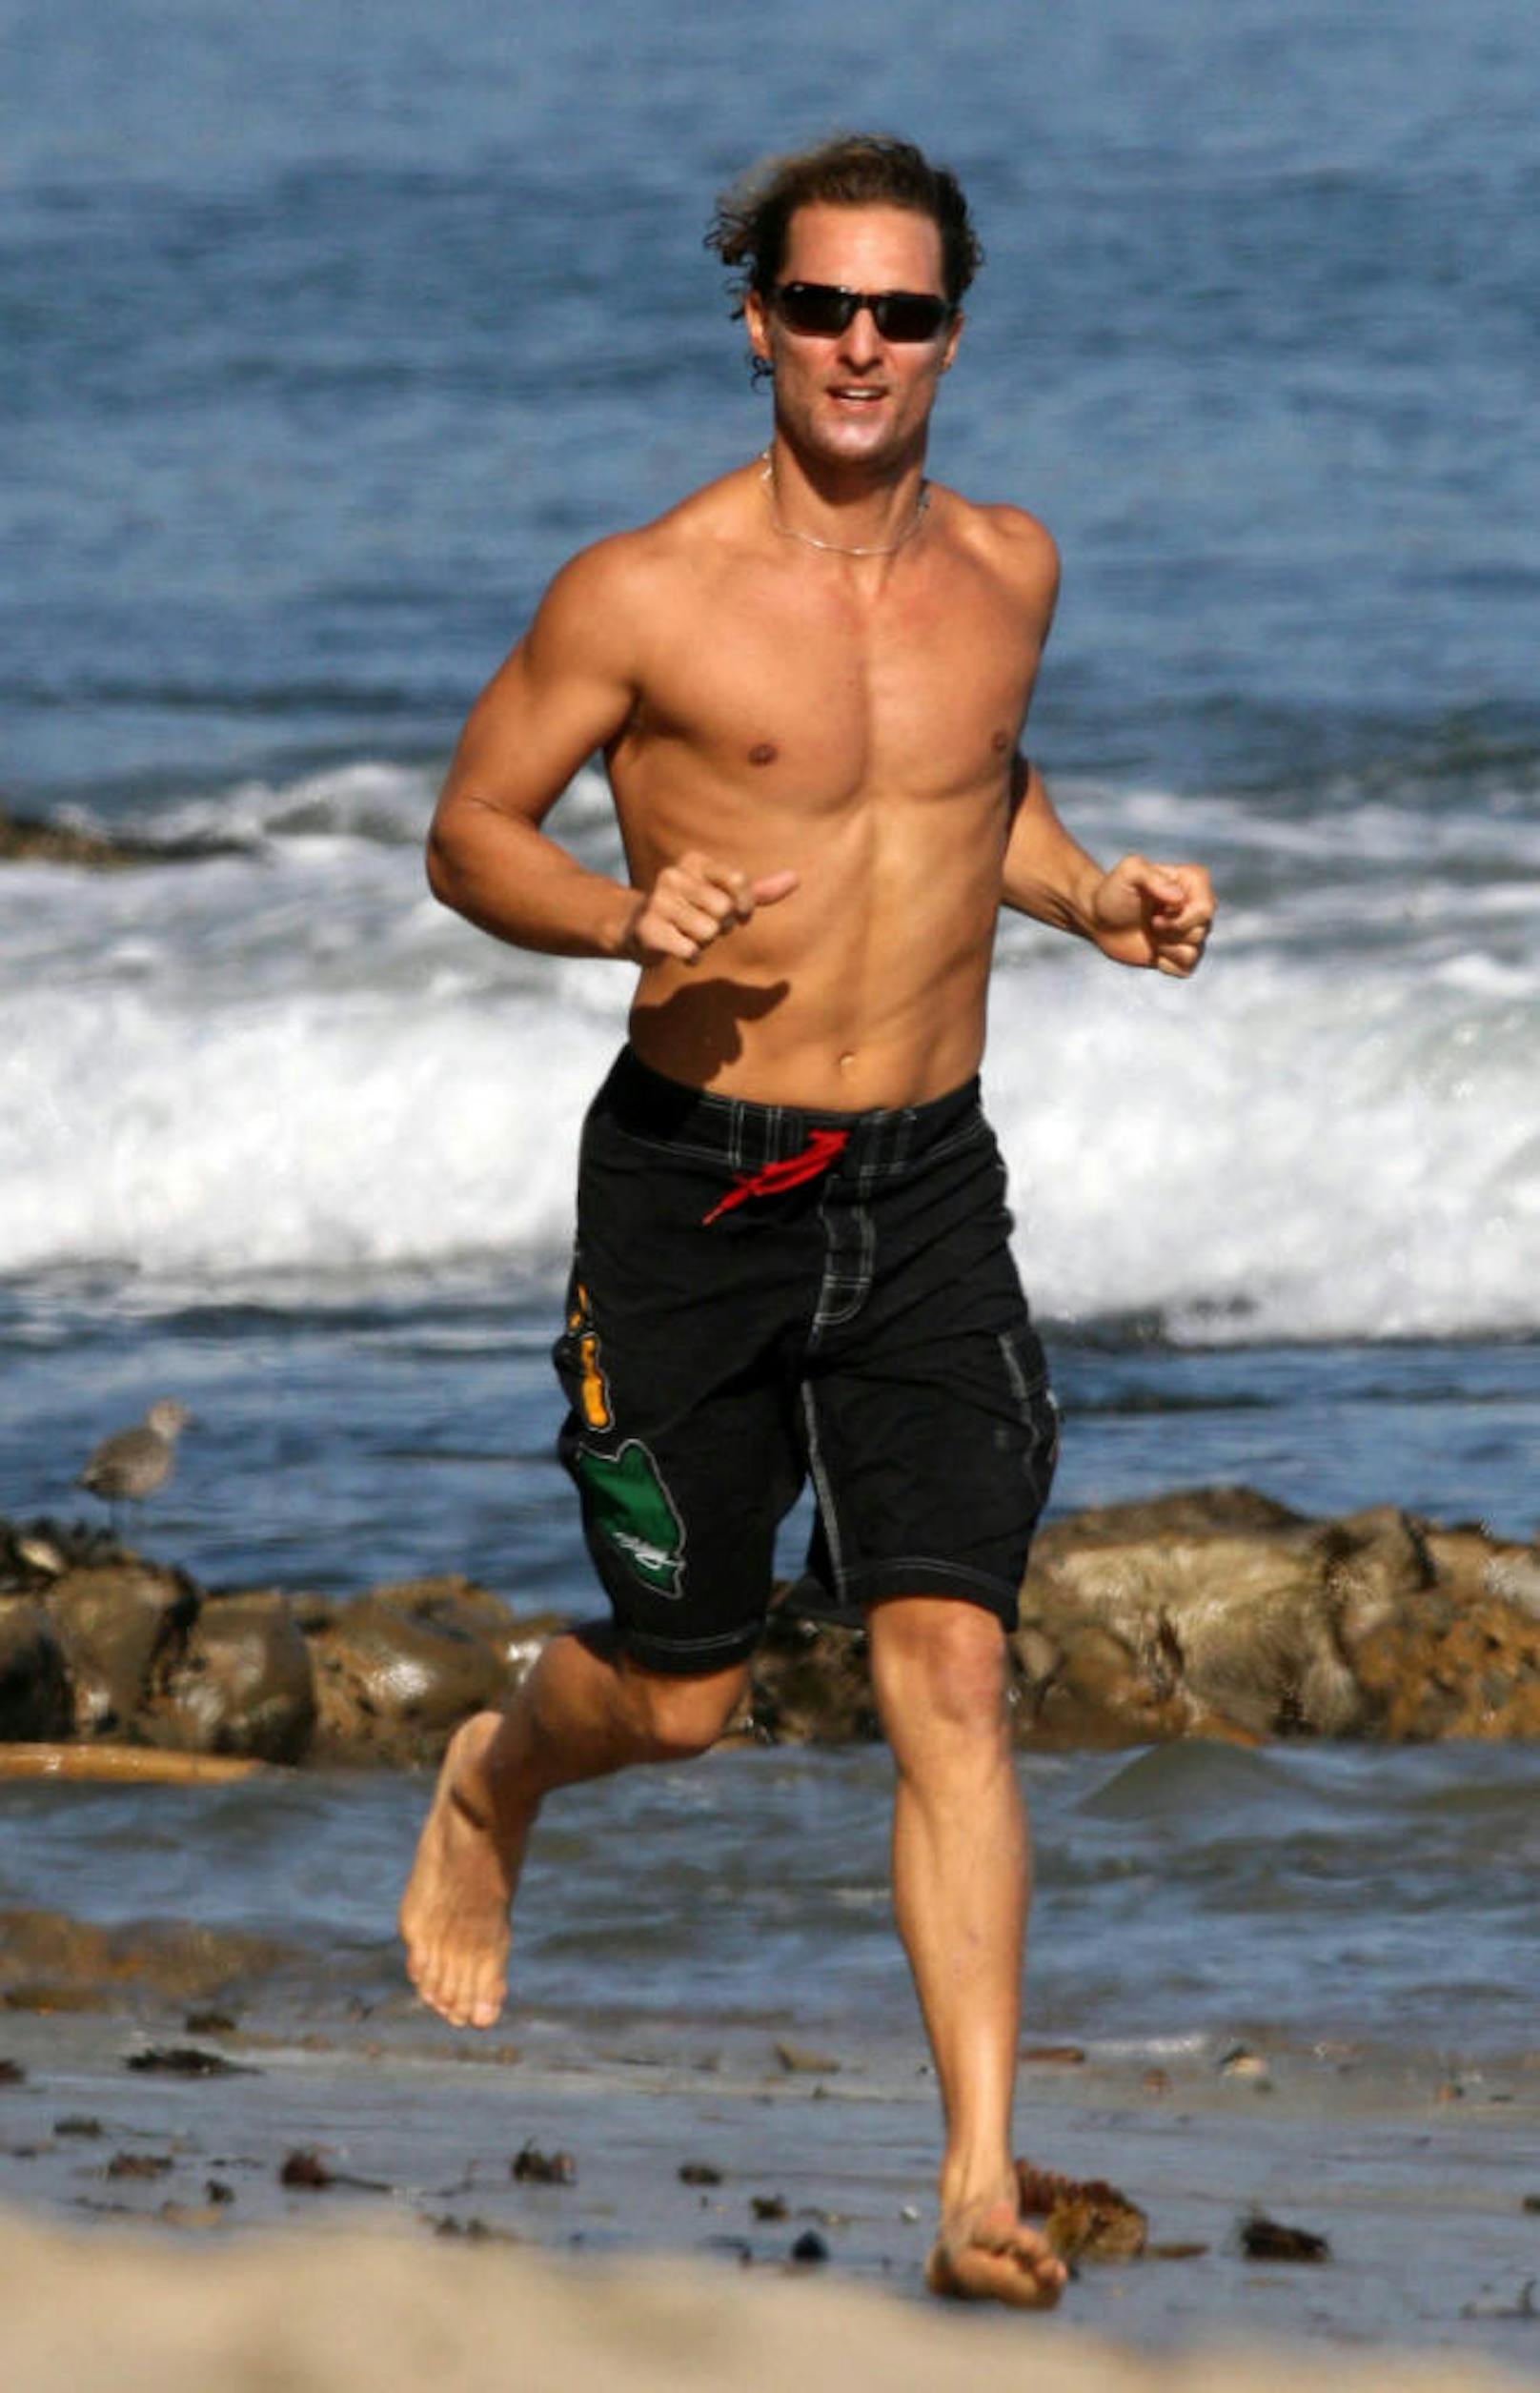 So kennt man Matthew McConaughey: "Sexiest Man Alive" (2005) am Strand von Malibu